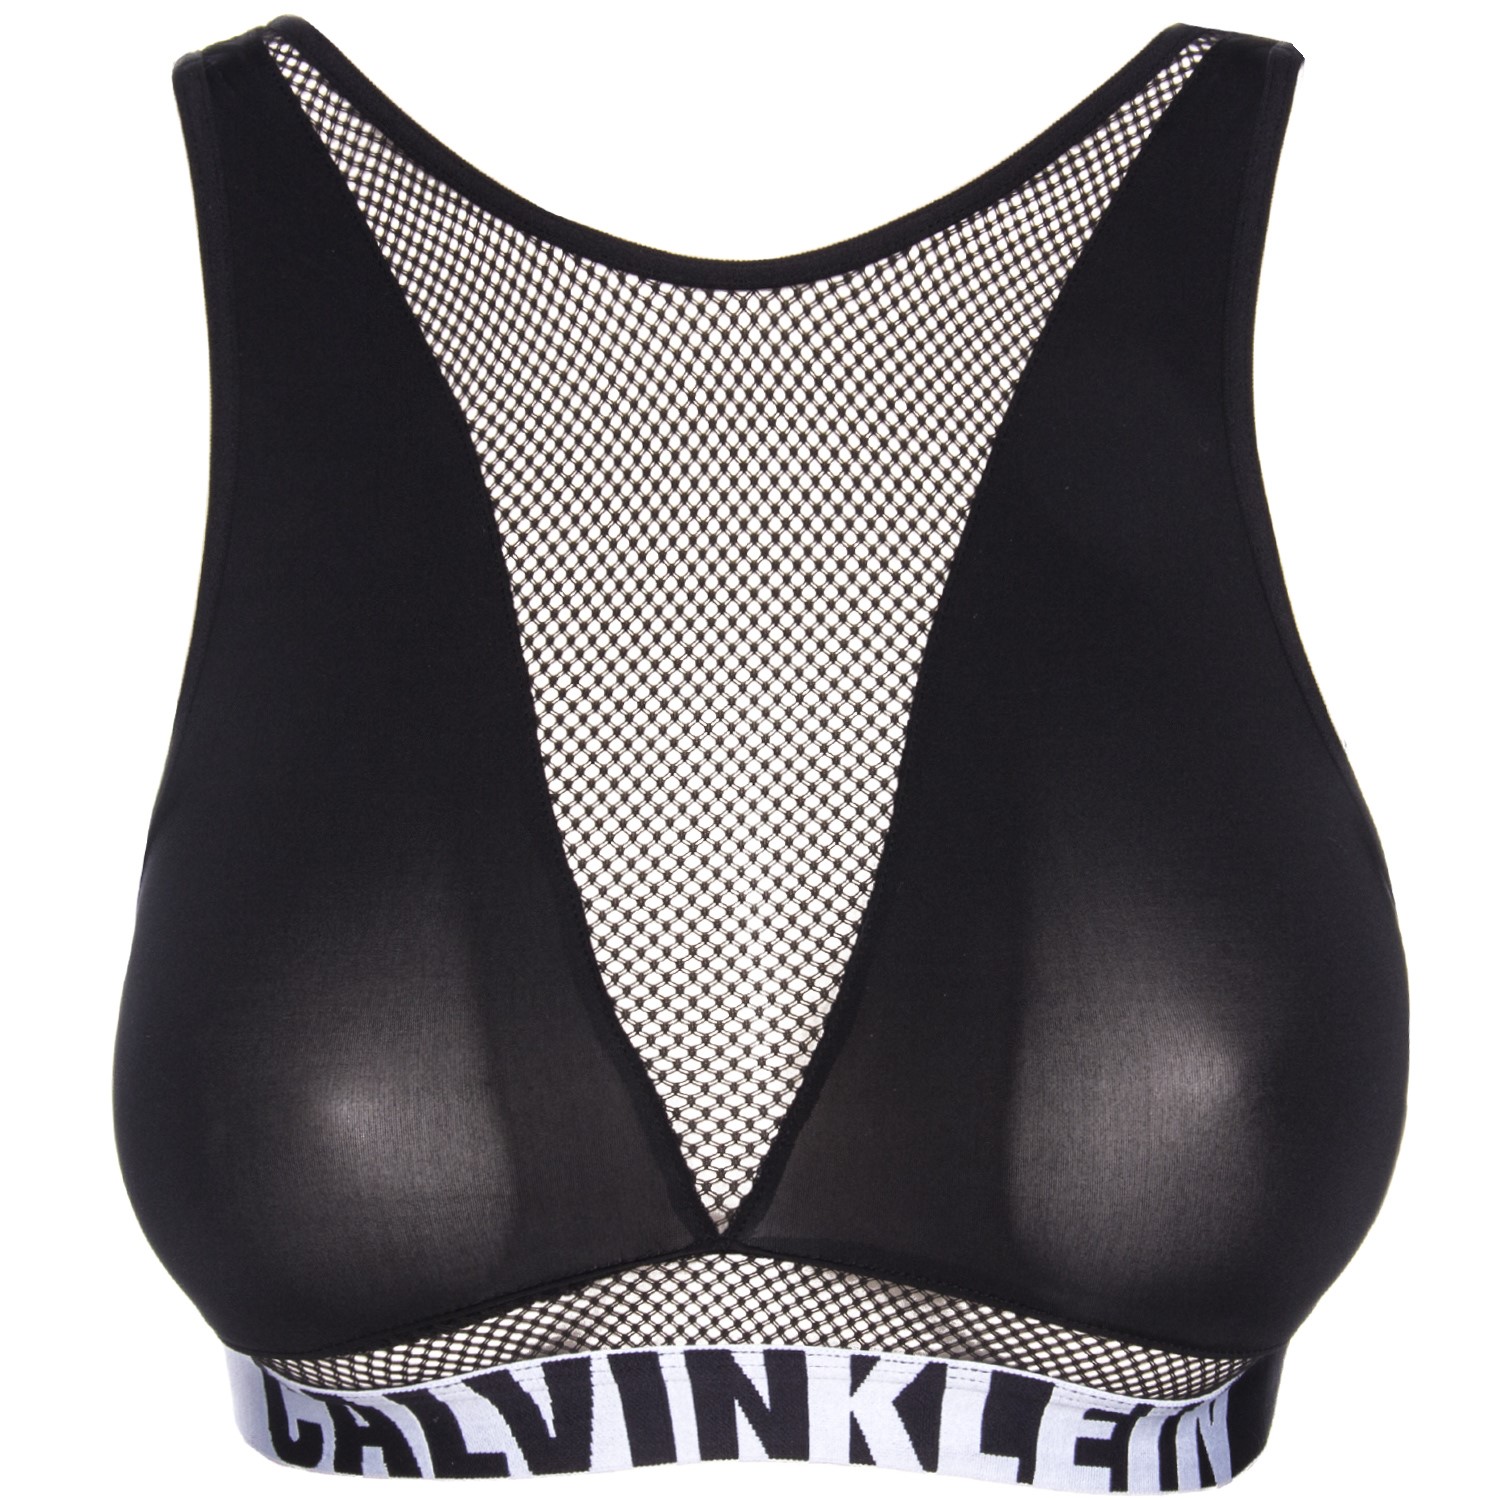 Calvin Klein Body Unlined Bra - Soft-bra - Bras - Underwear - Timarco.co.uk